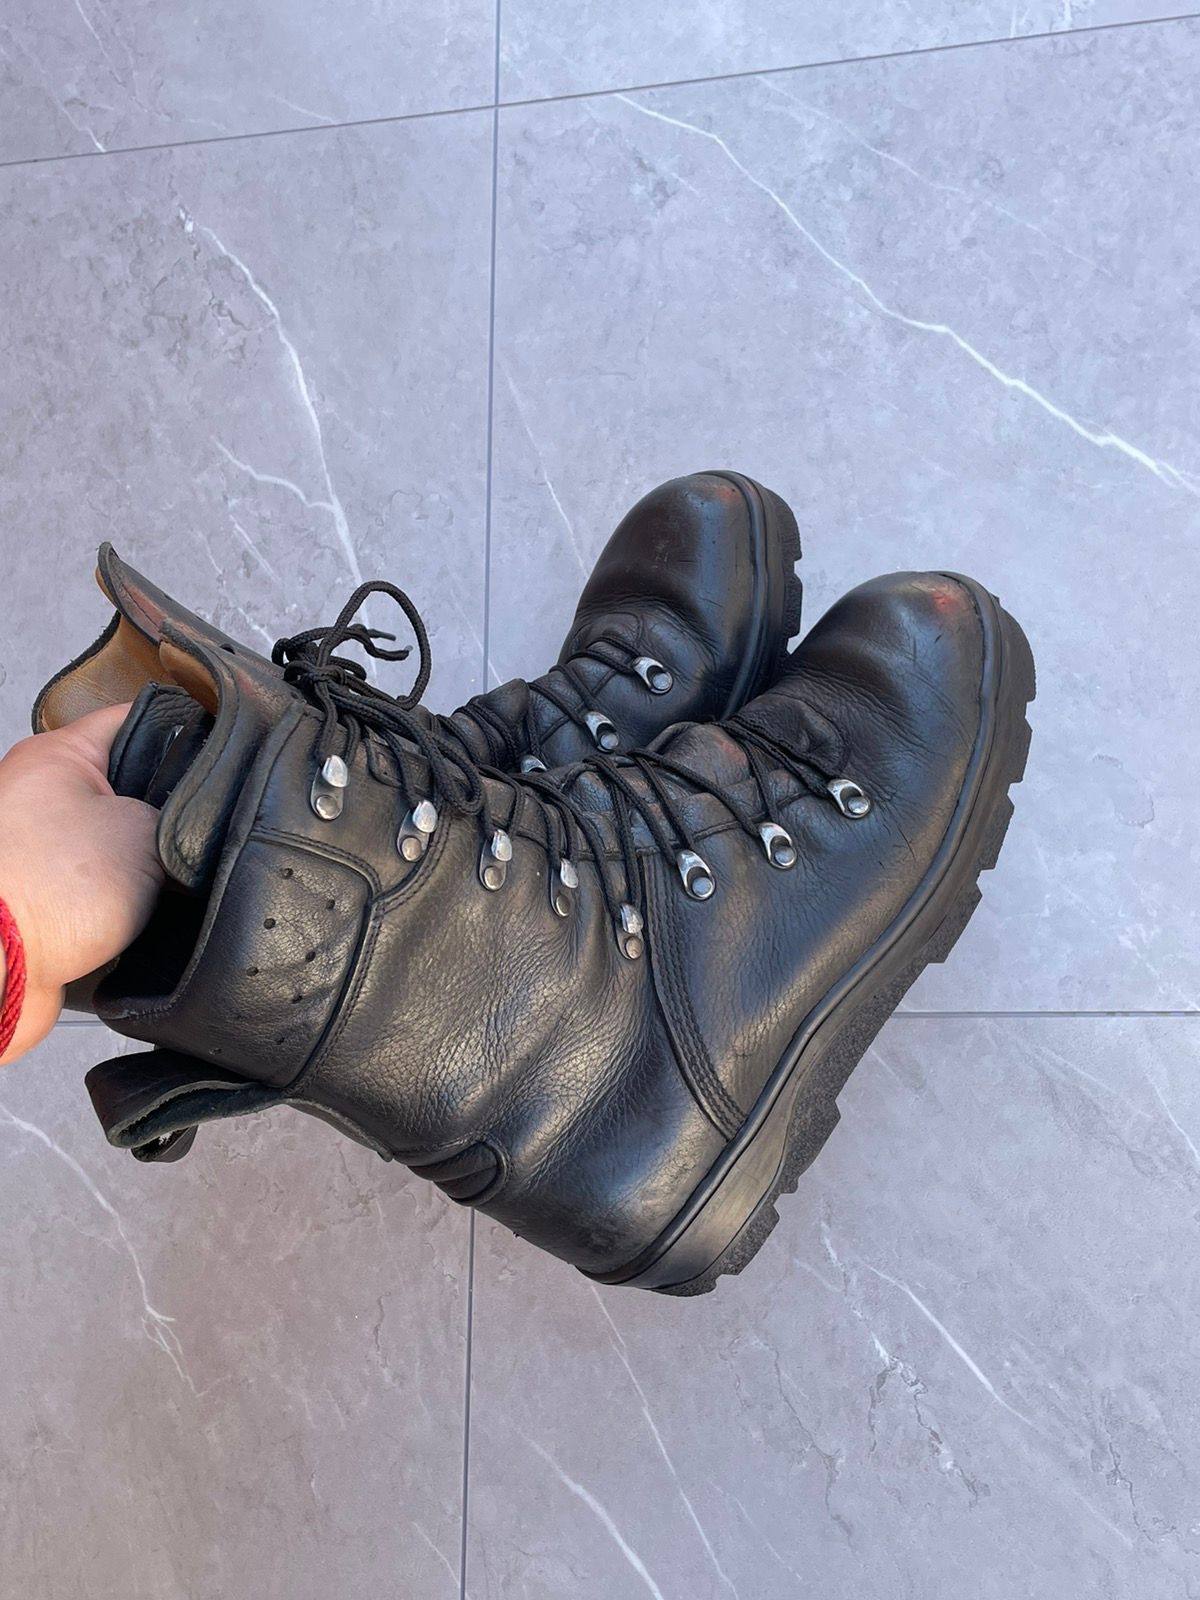 Vintage 1970s Vintage Military Black Leather Combat Boots Size US 9 / EU 42 - 5 Thumbnail